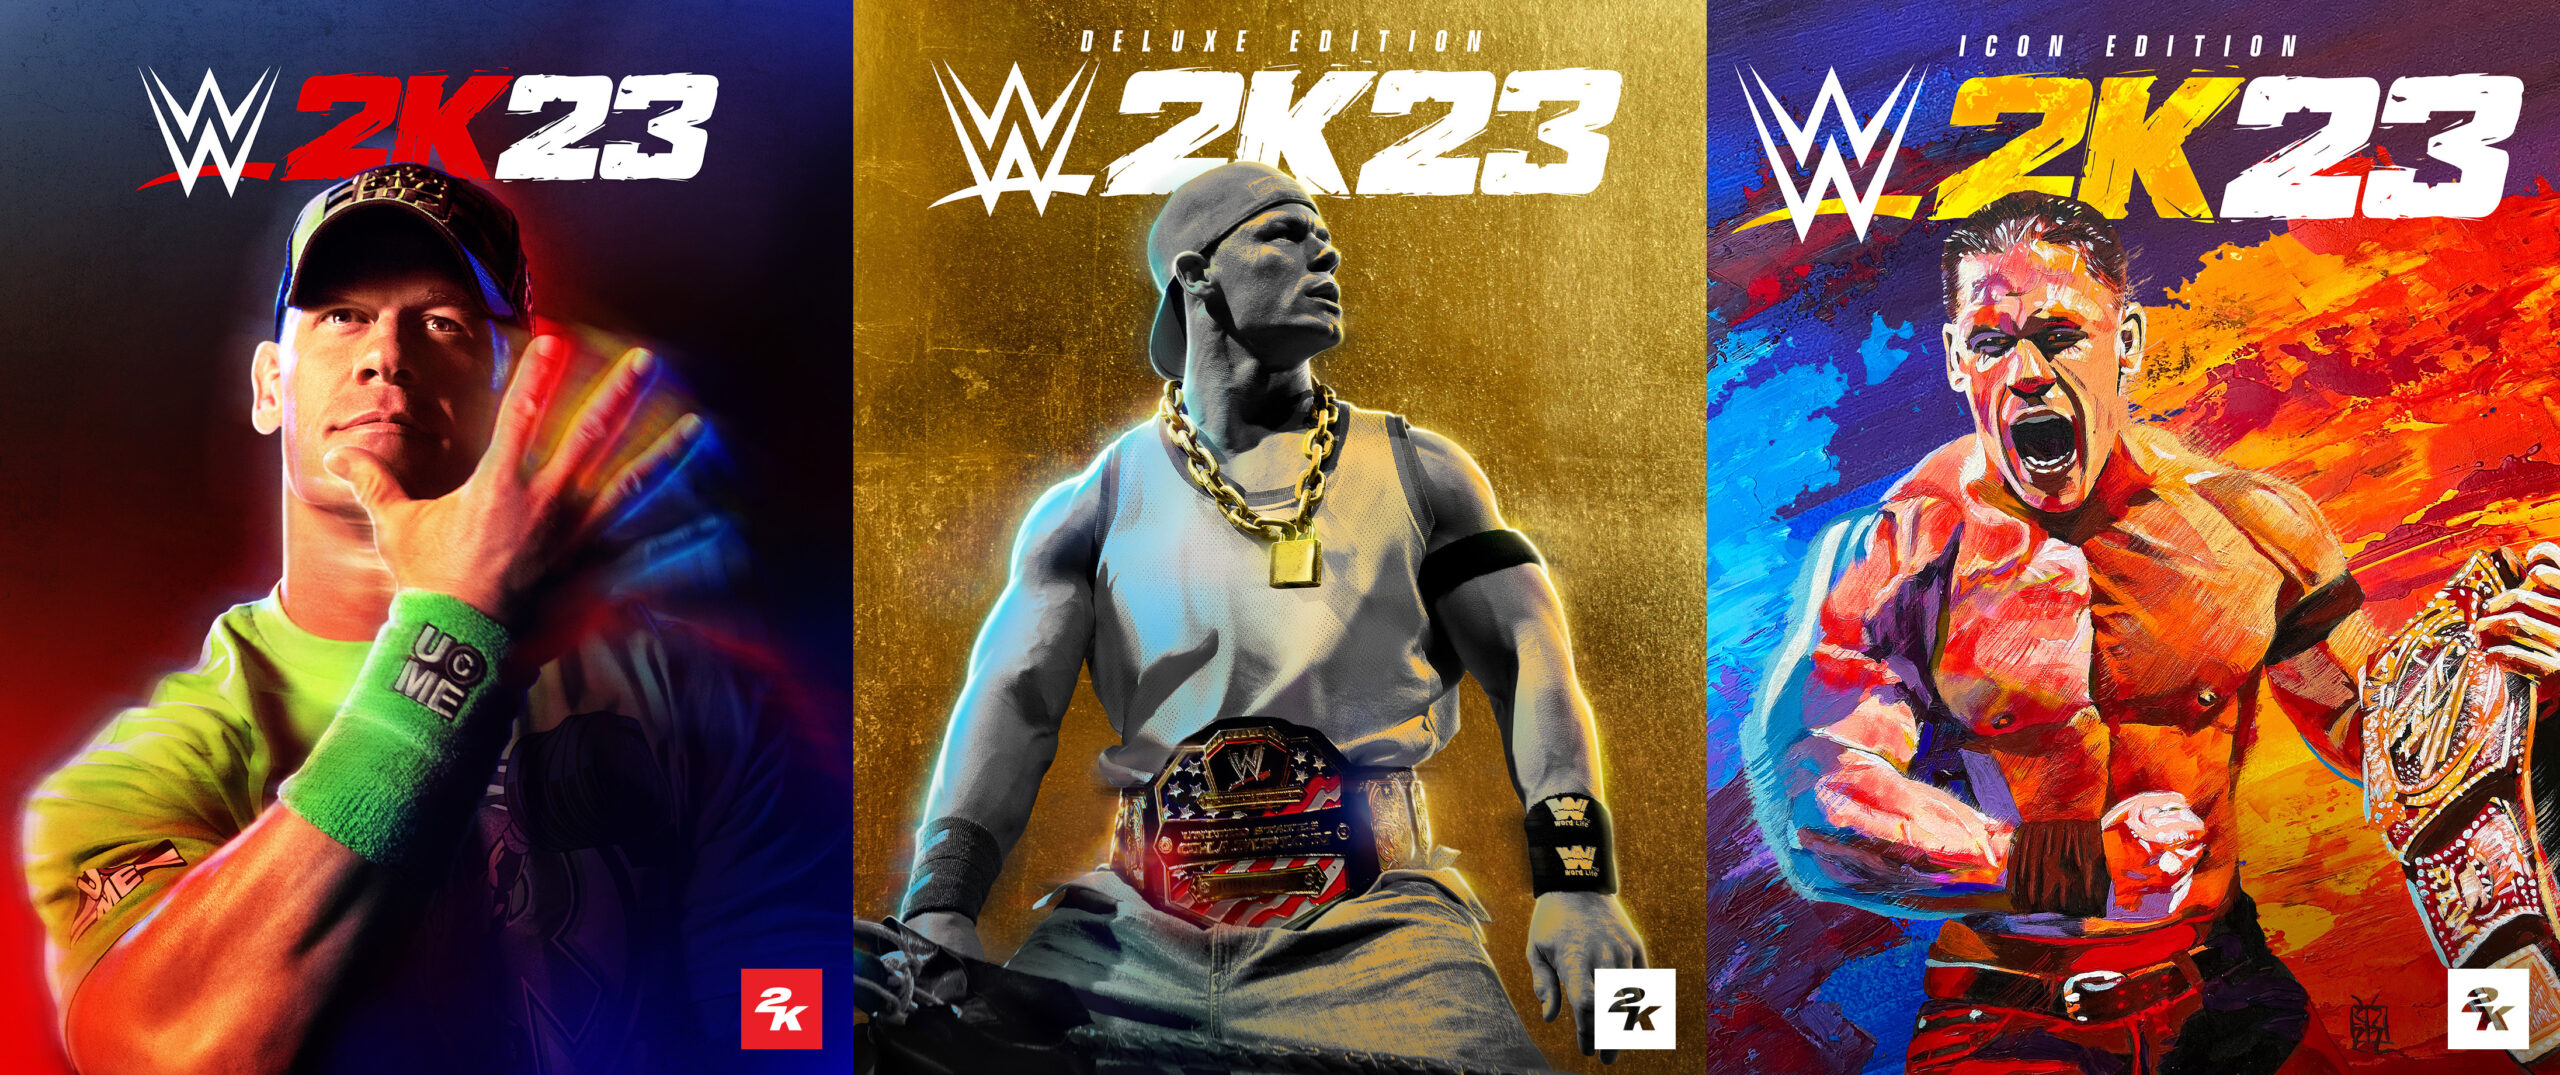 WWE-2K23-Cover-Slate-Key-Art-scaled.jpg